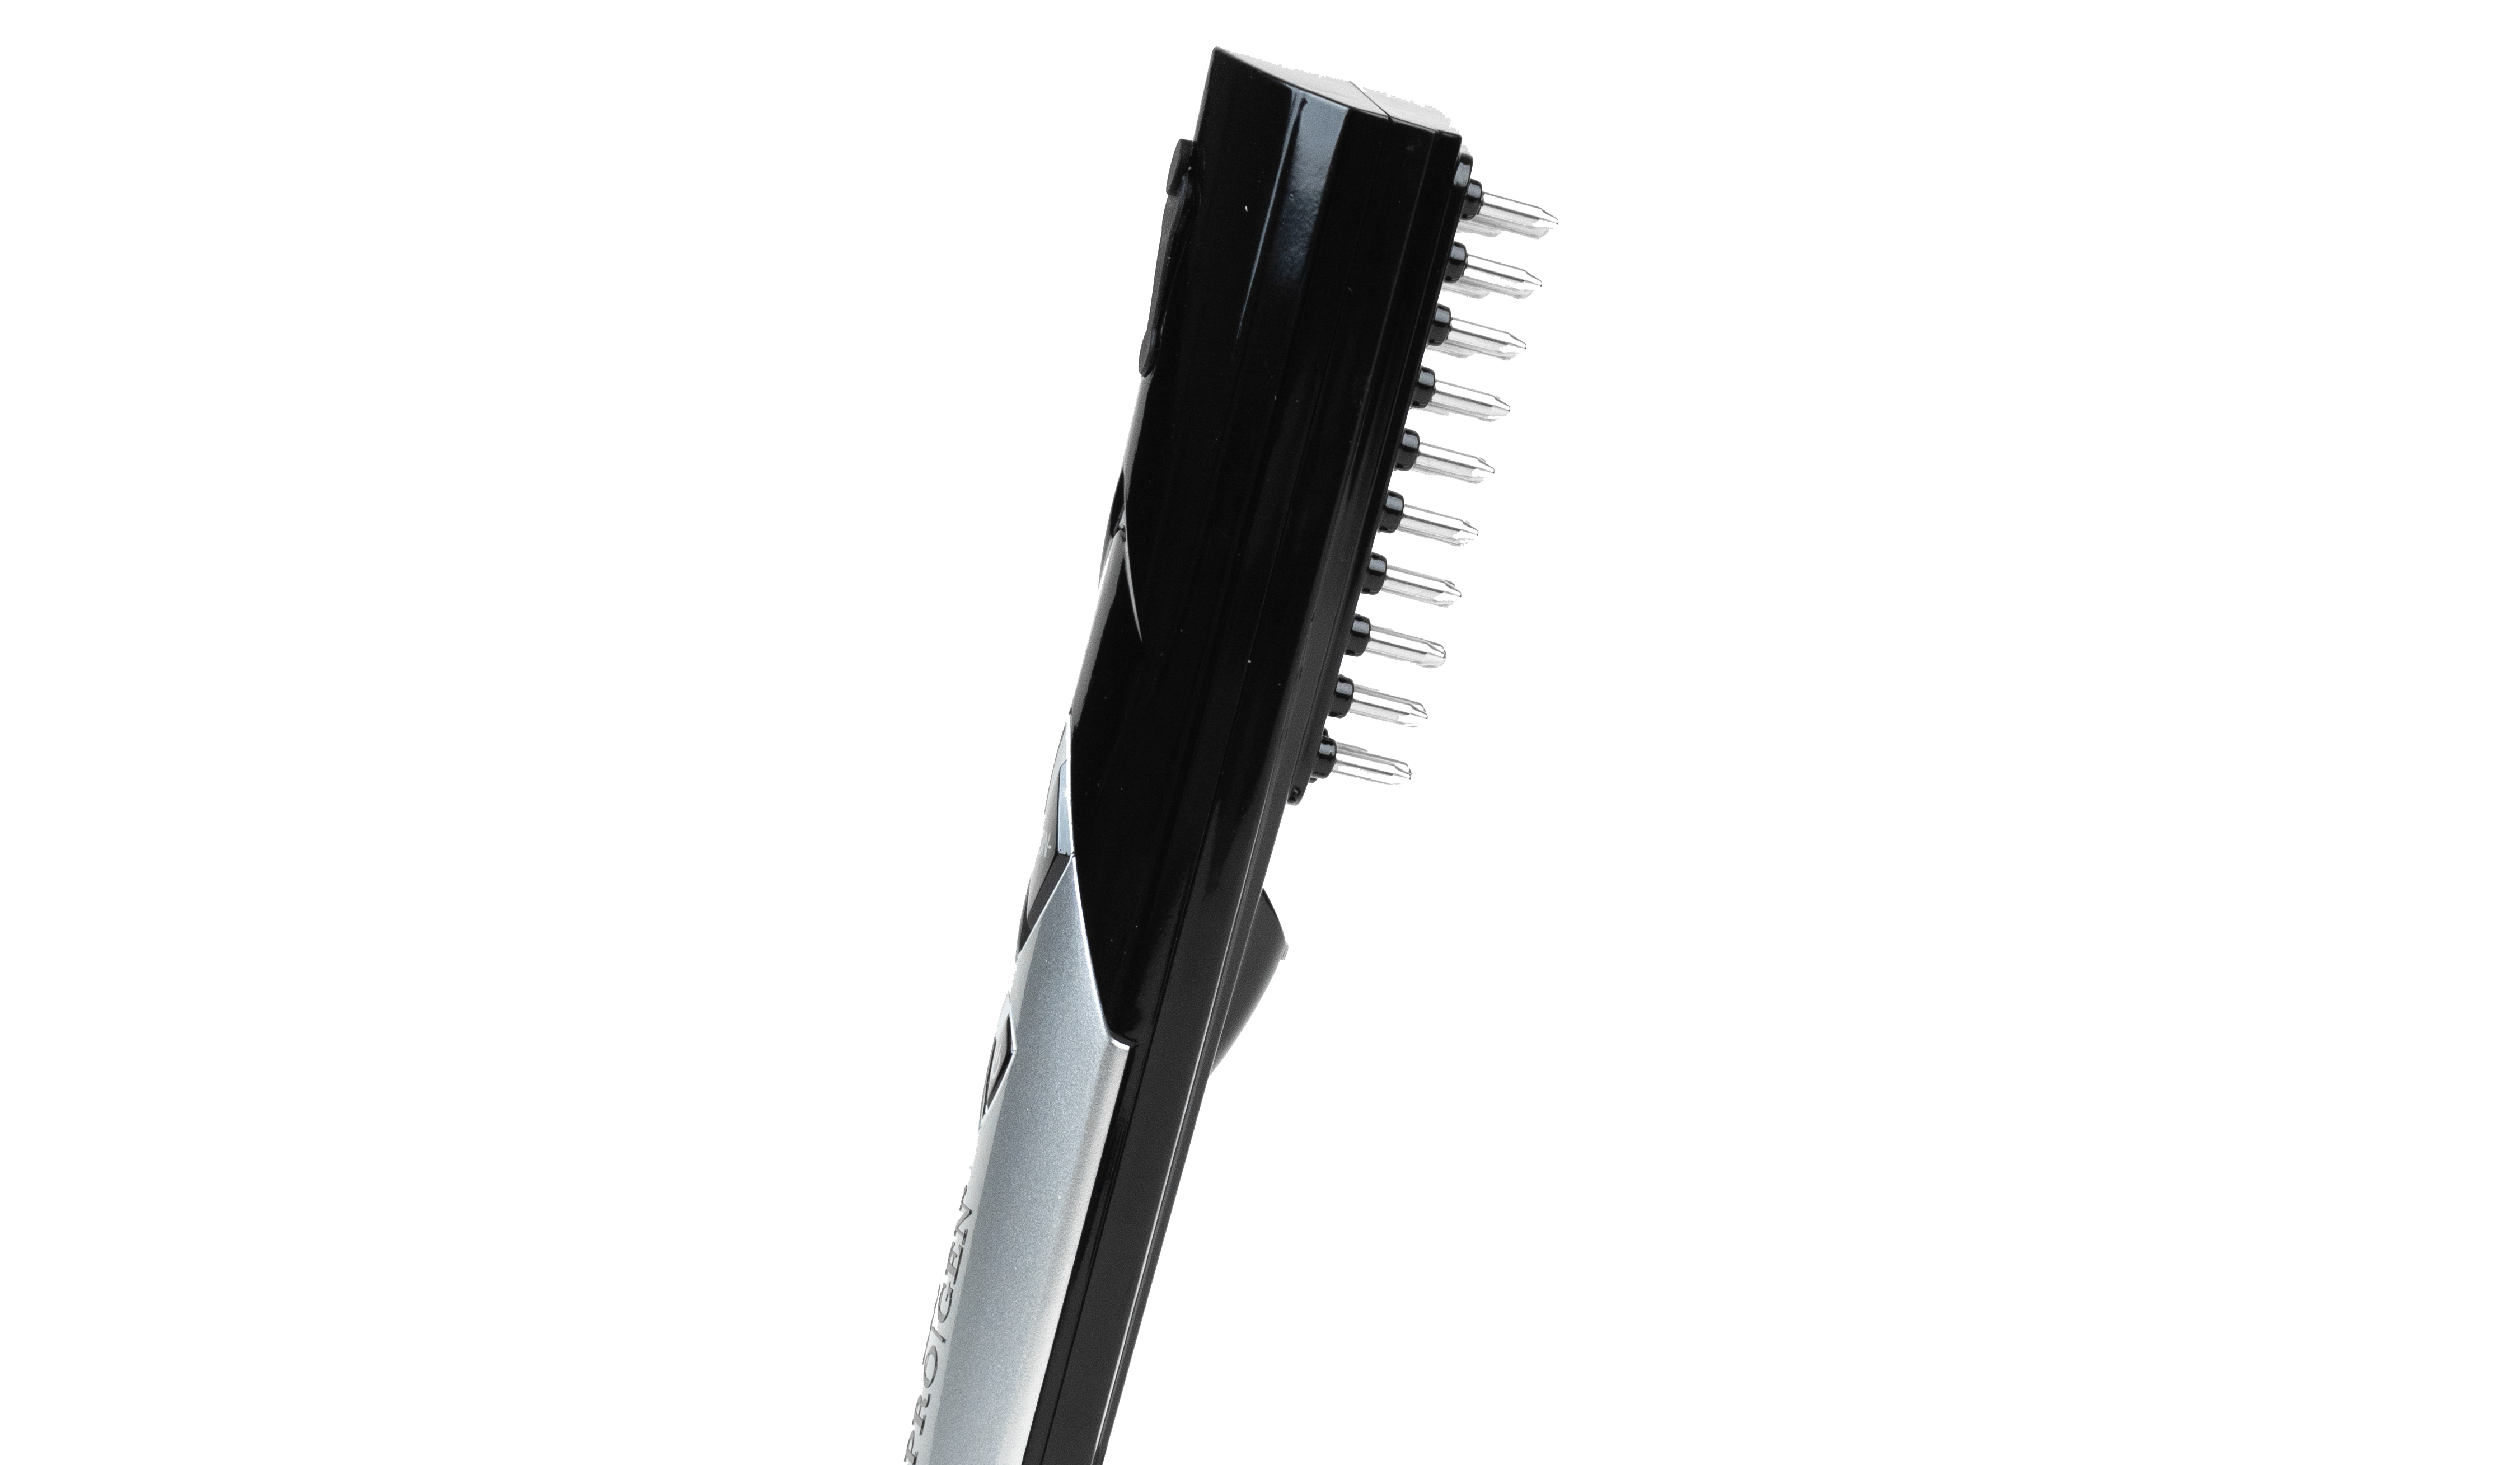 Hair Thickening Brush - ION